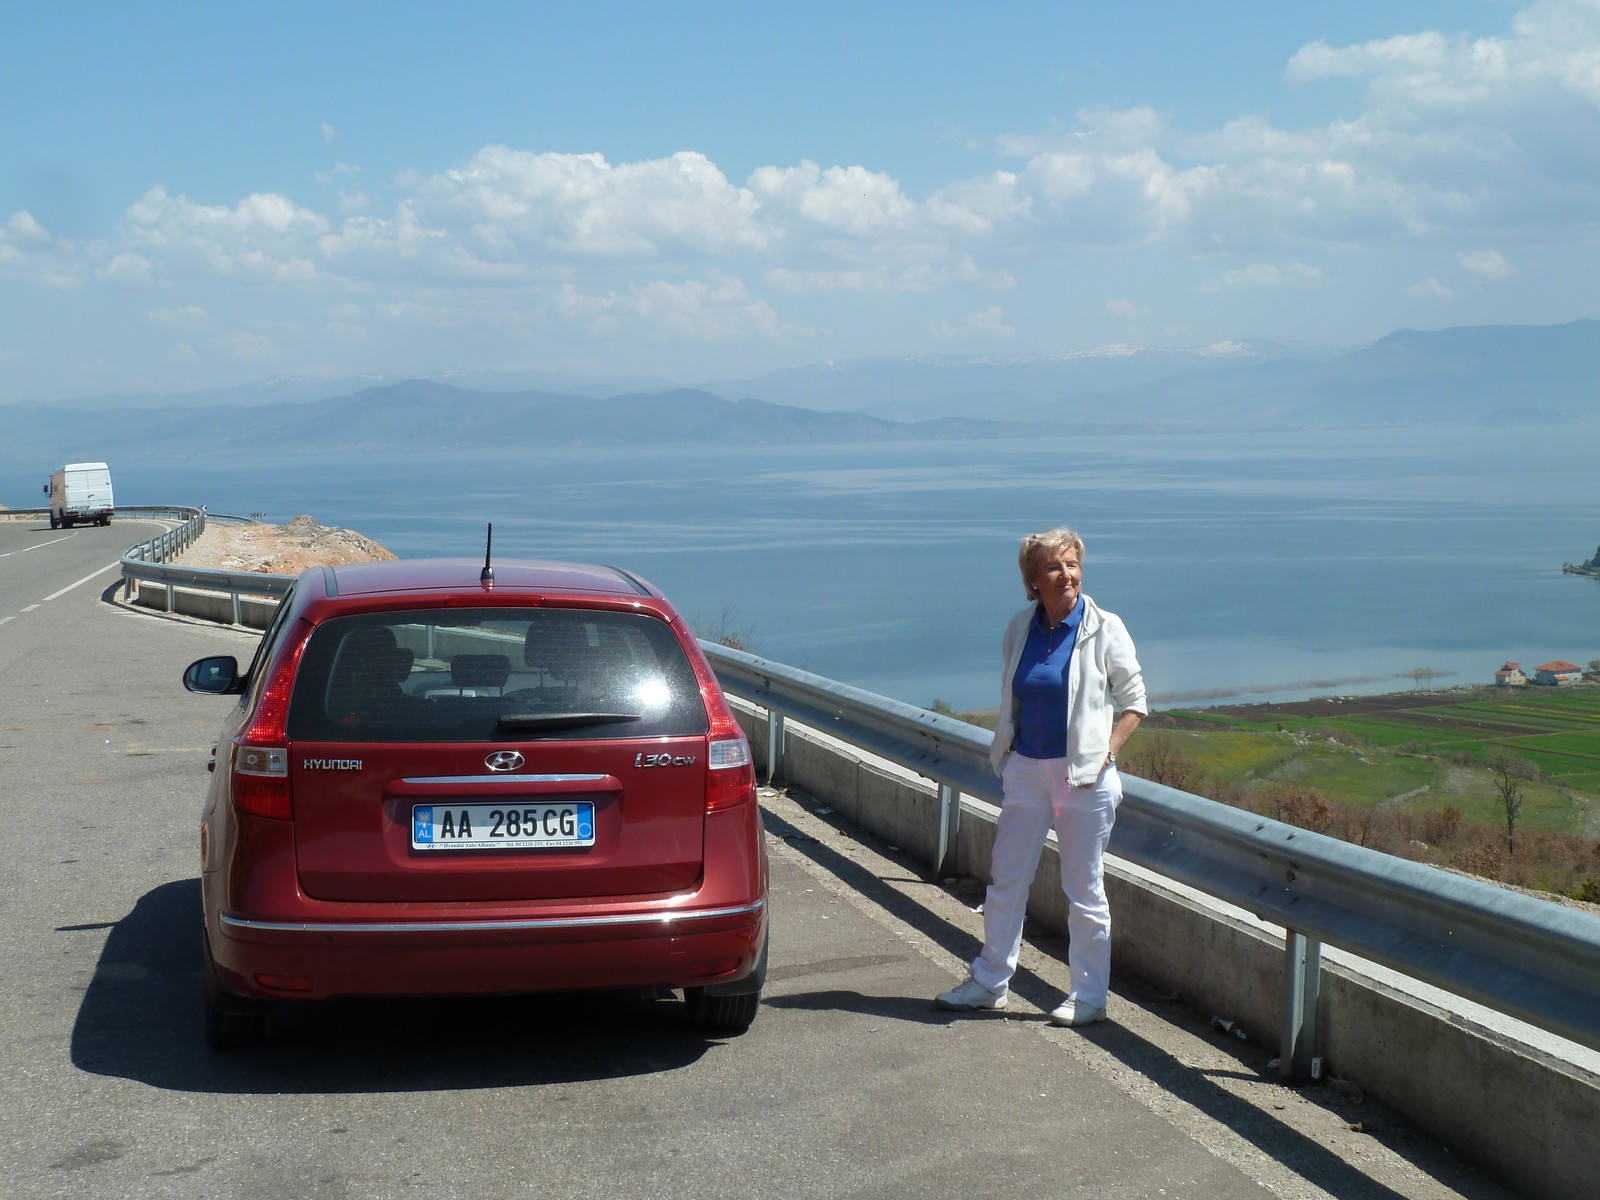 Fahrt nach Osten zum Ohridsee (Erweiterung Ost) - Lupe Reisen